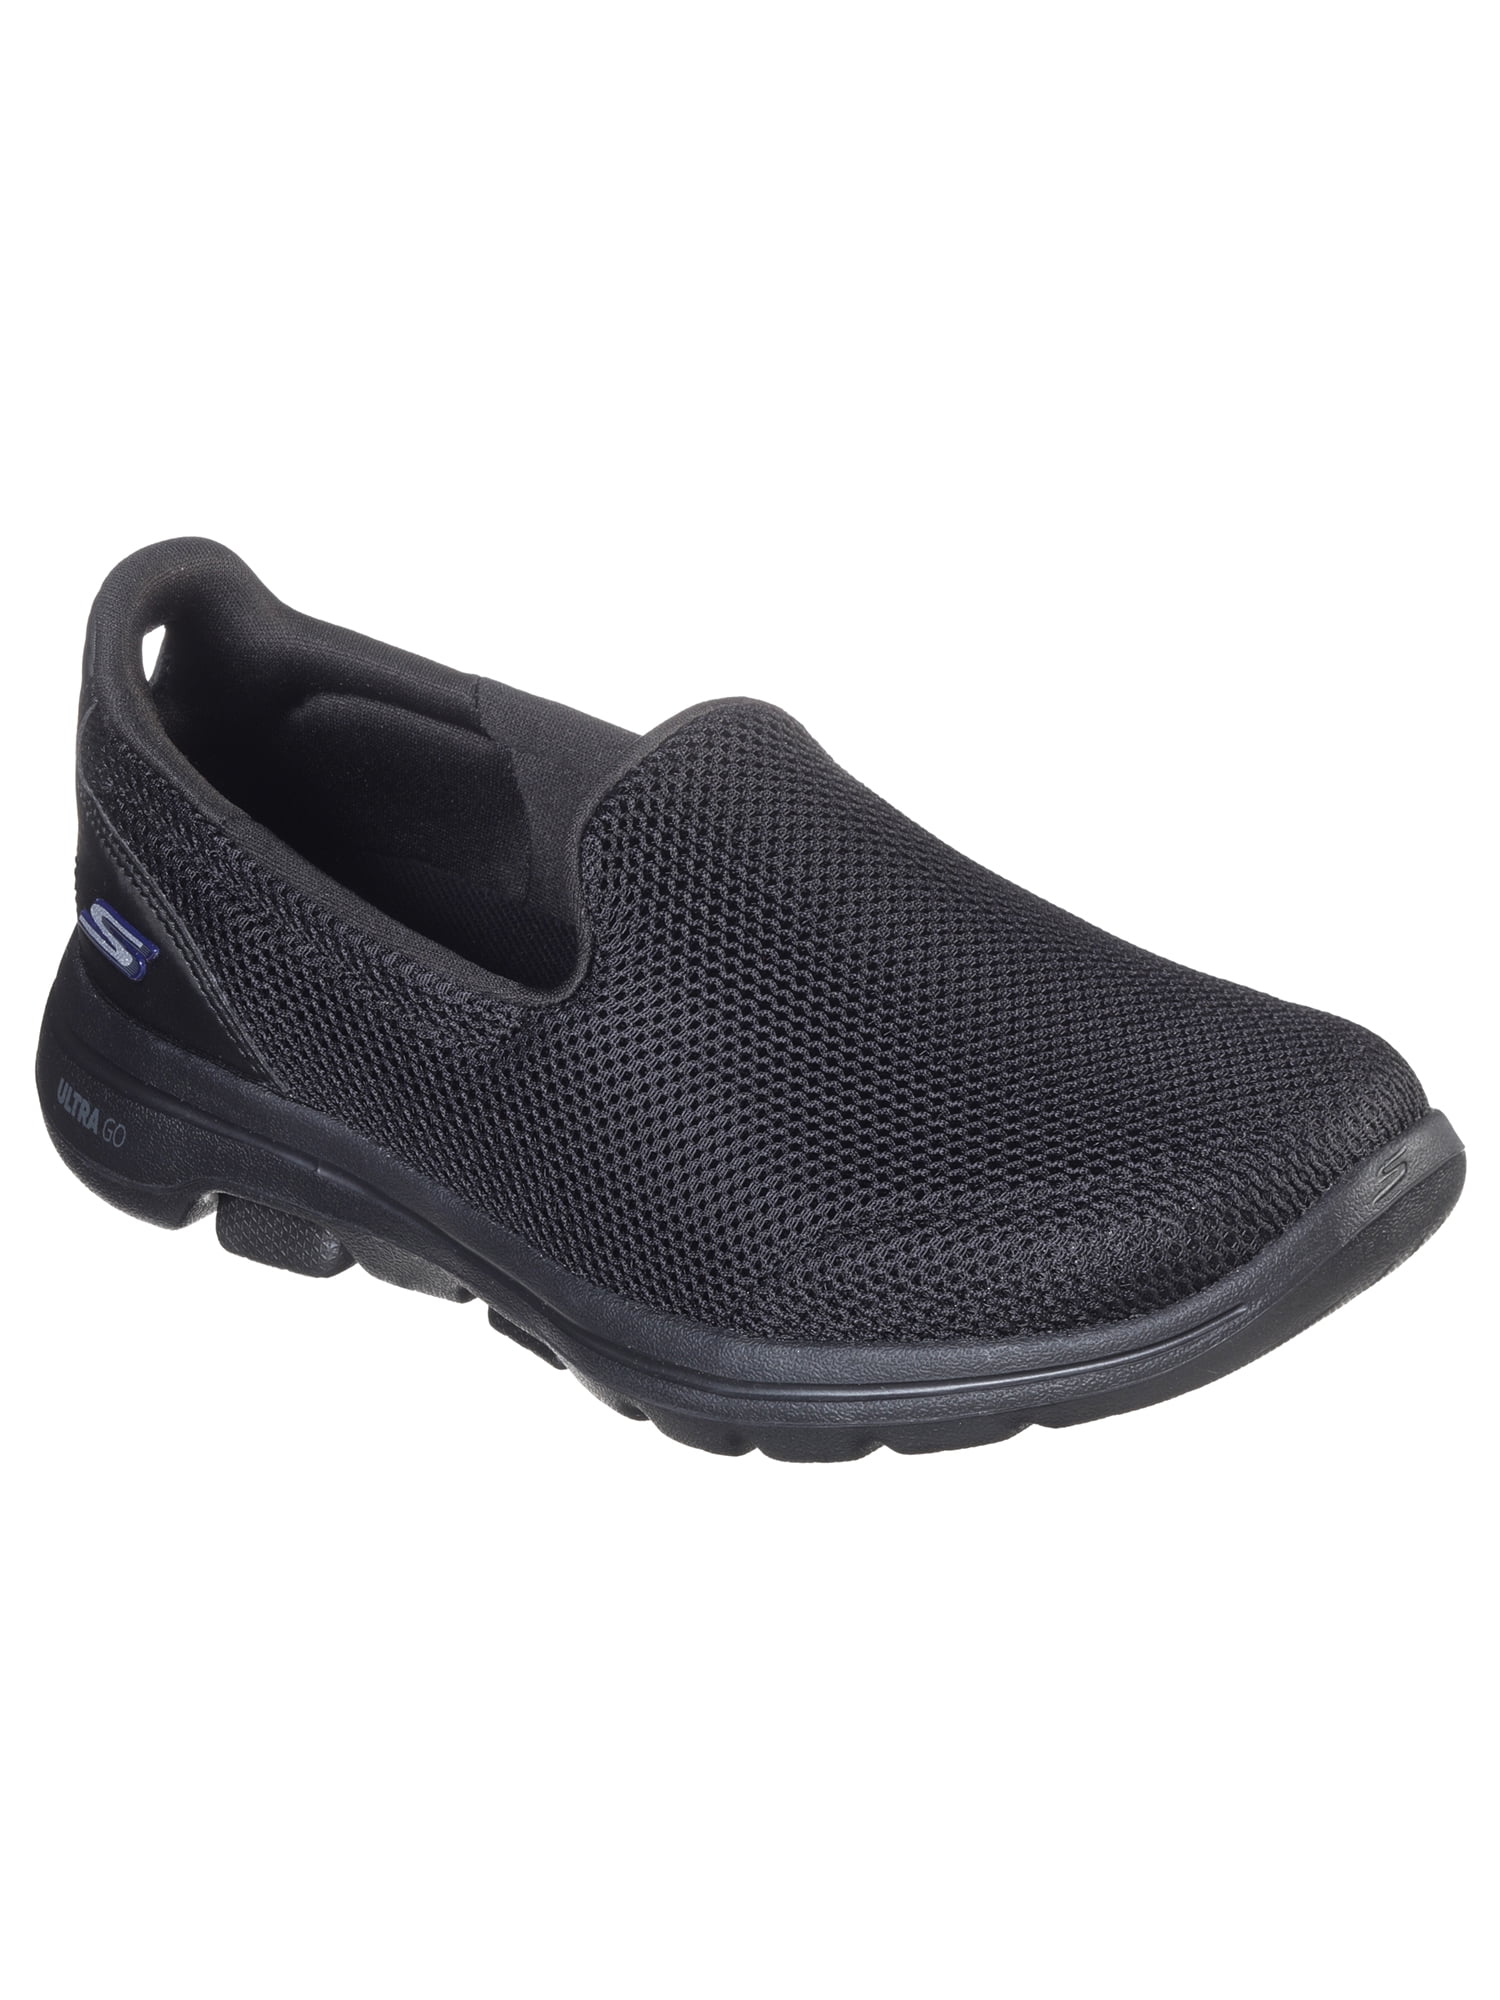 Skechers Women's 5 Slip-on Comfort Shoe Width Available) Walmart.com